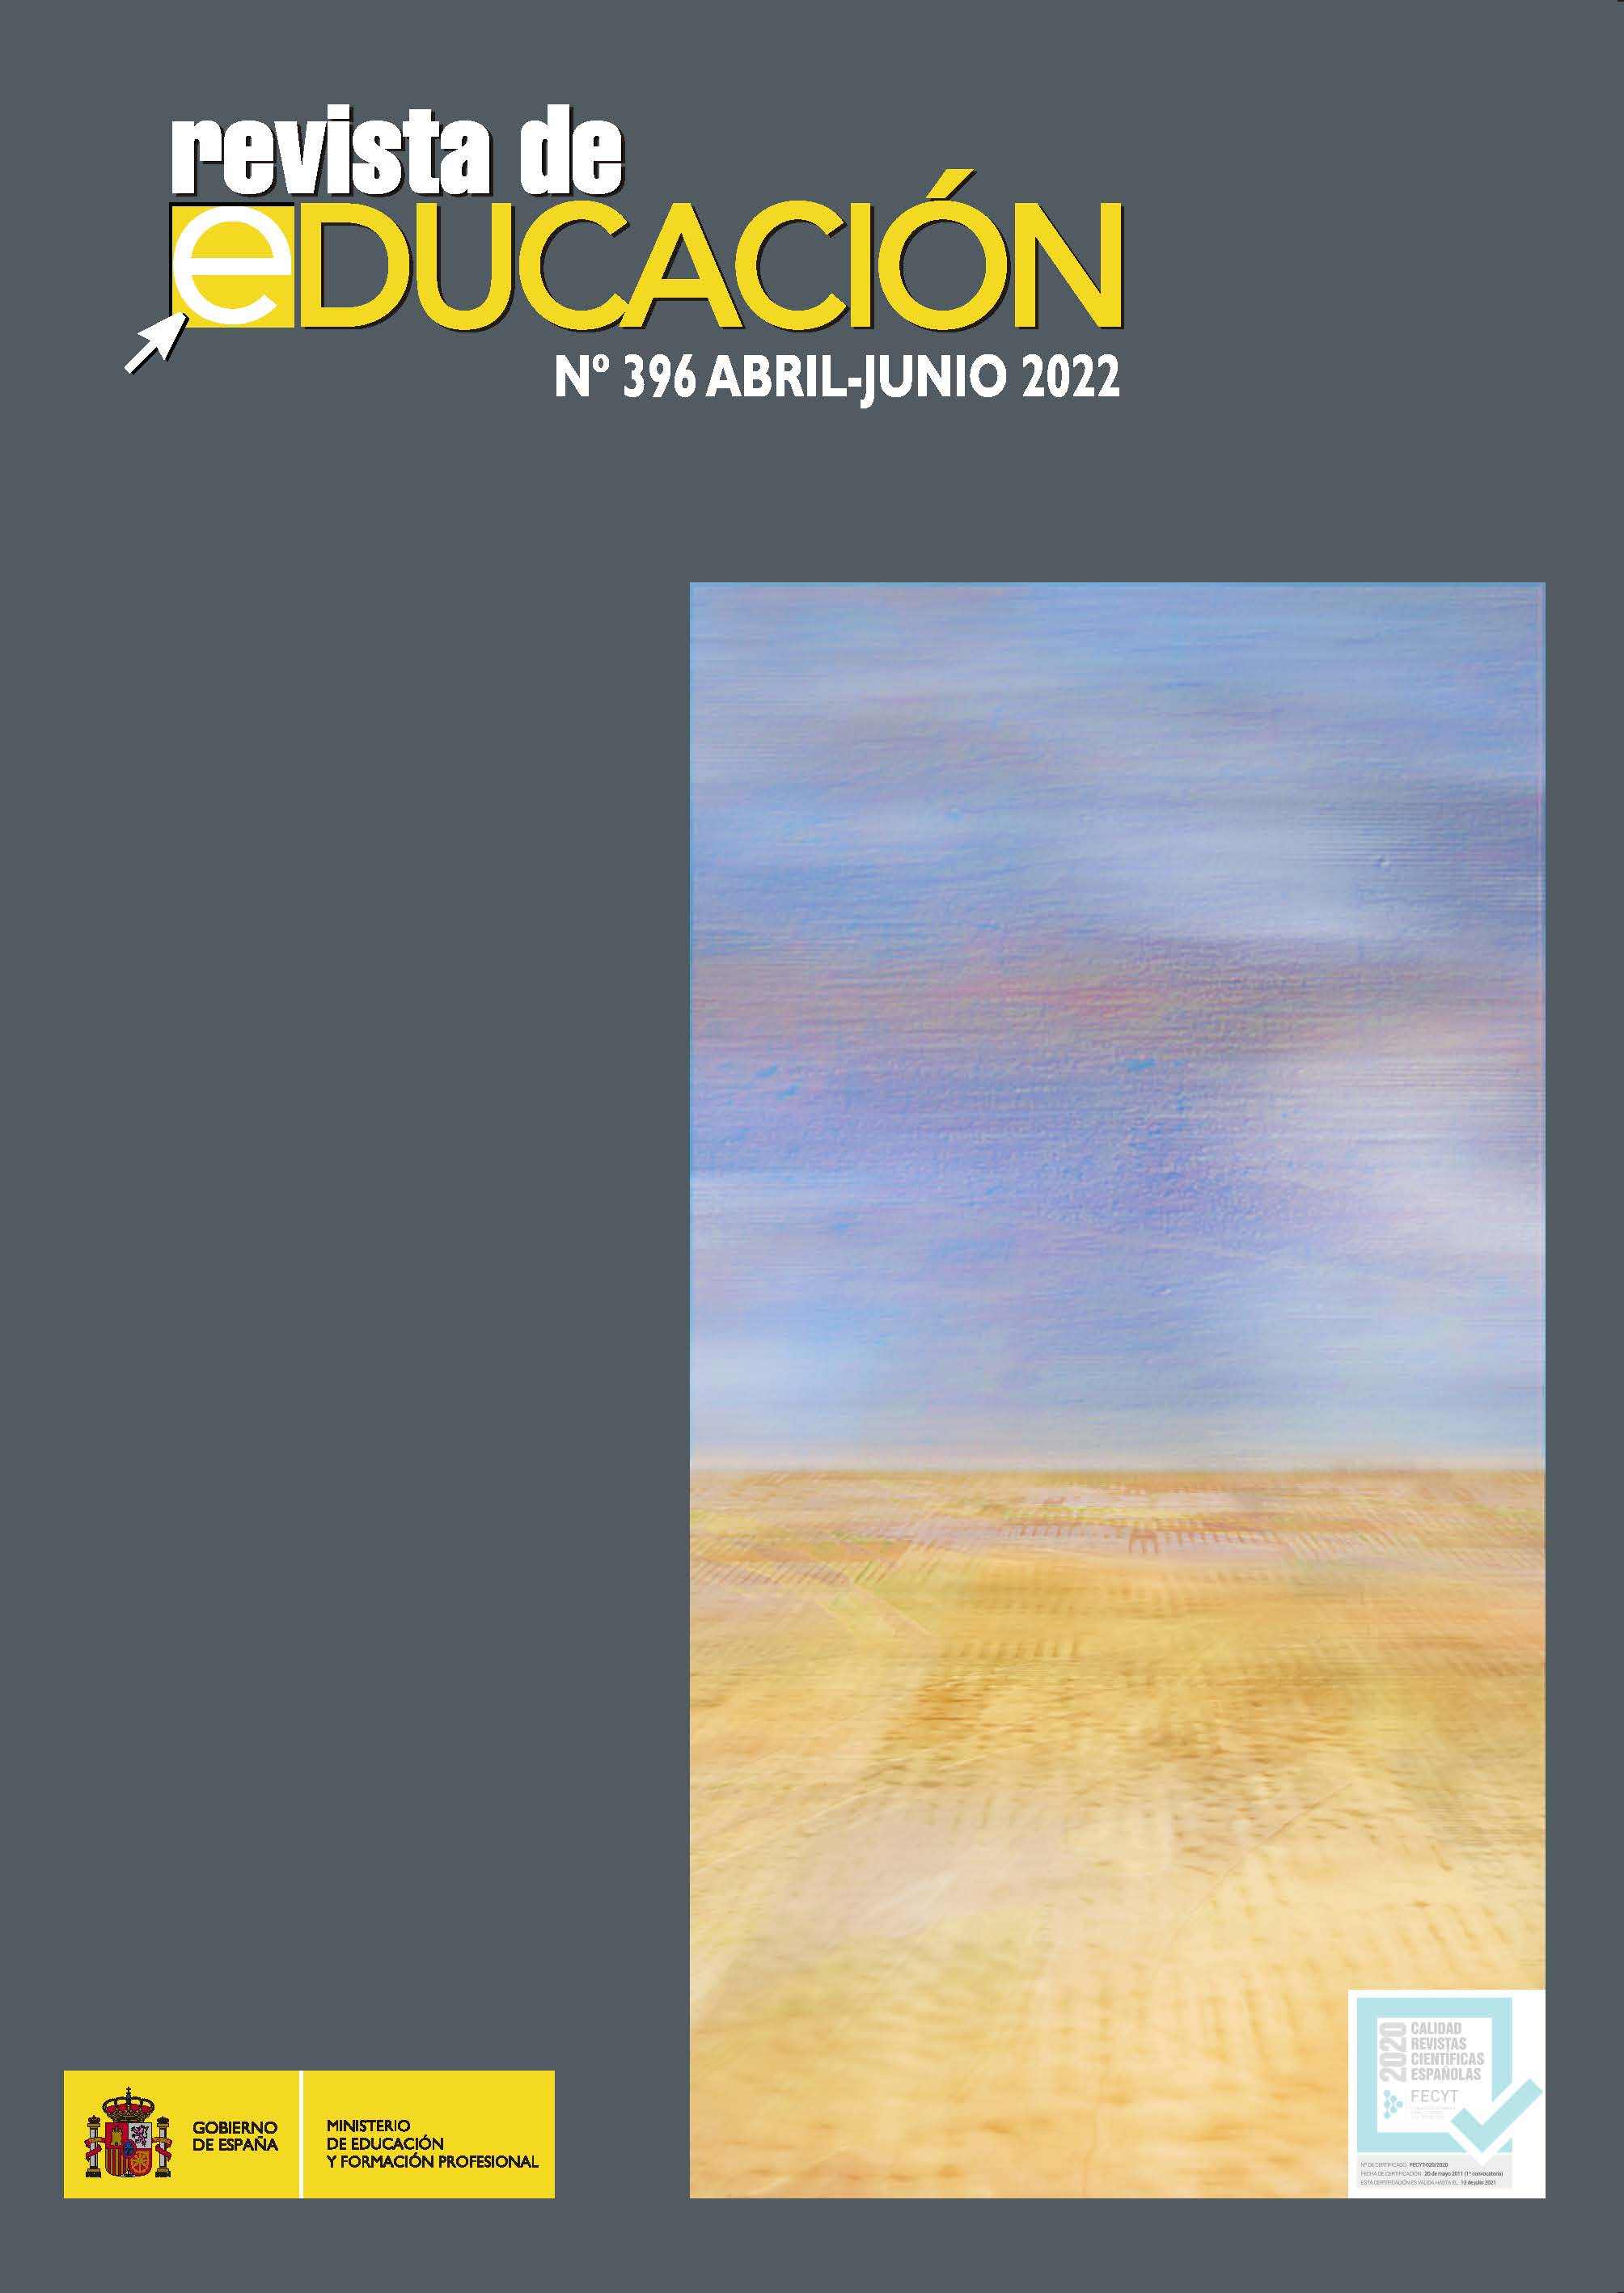 edition-182937.jpg (2008×2835)